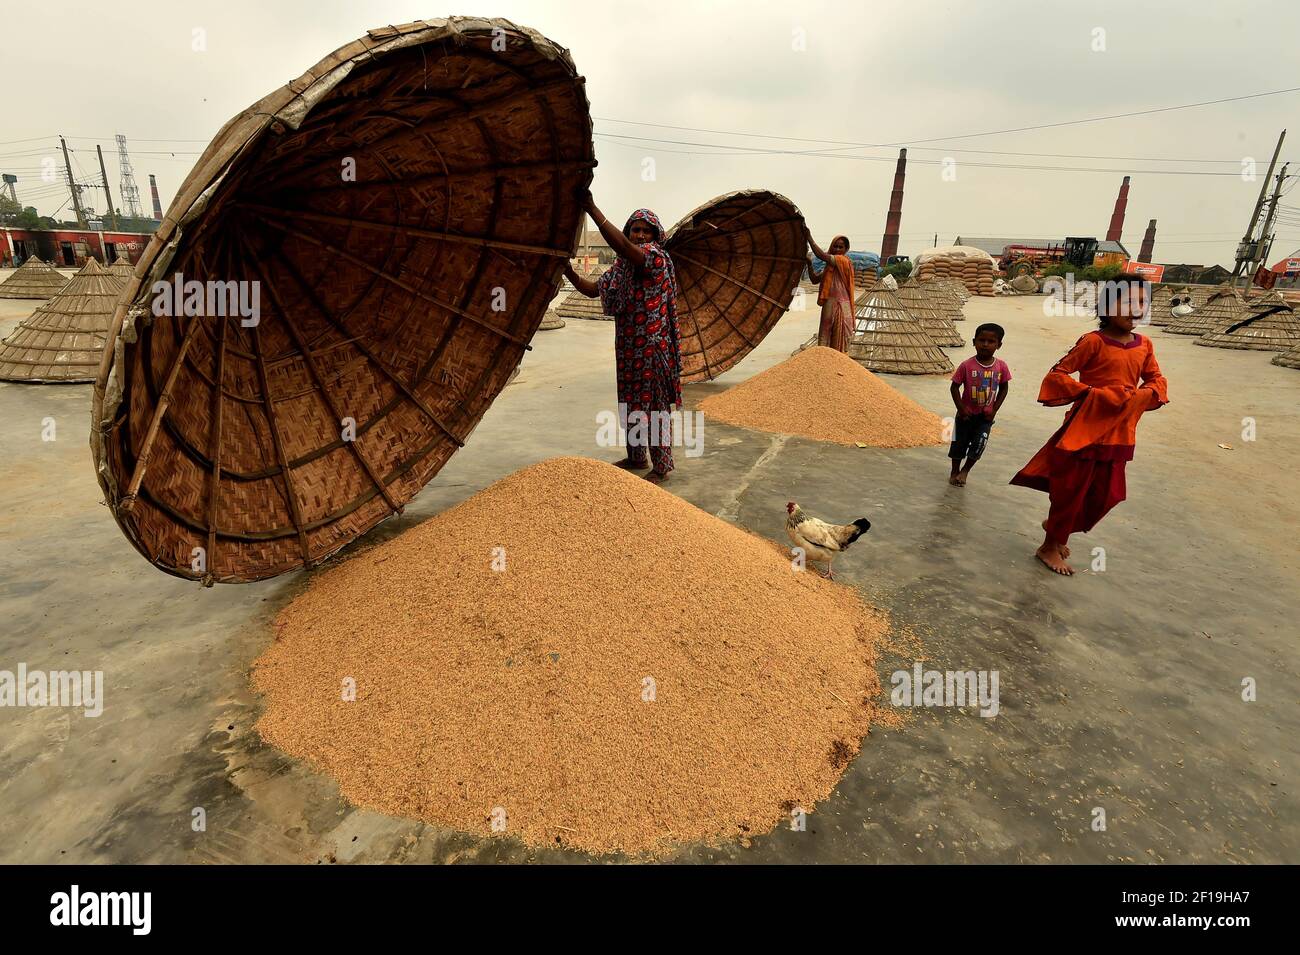 Brahmanbaria. März 2021, 7th. Arbeiter nehmen am 7. März 2021 in einem Hof der Reismühle in Brahmanbaria, 109 Kilometer nordöstlich der Hauptstadt Dhaka, Bangladesch, Kegel aus den Haufen von Reisfeldern zum Trocknen. Quelle: Xinhua/Alamy Live News Stockfoto